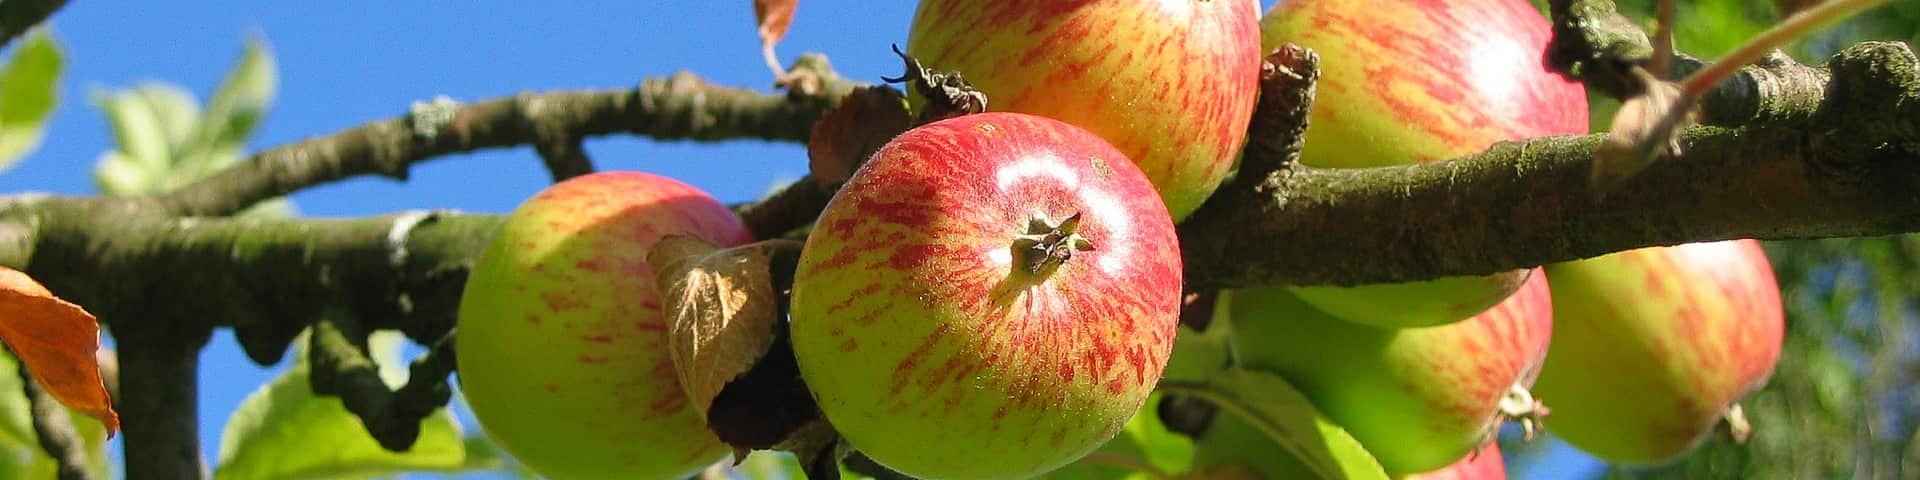 Ast eines Apfelbaum mit reifen Äpfeln von veredelten Apfelbaum-Sorten